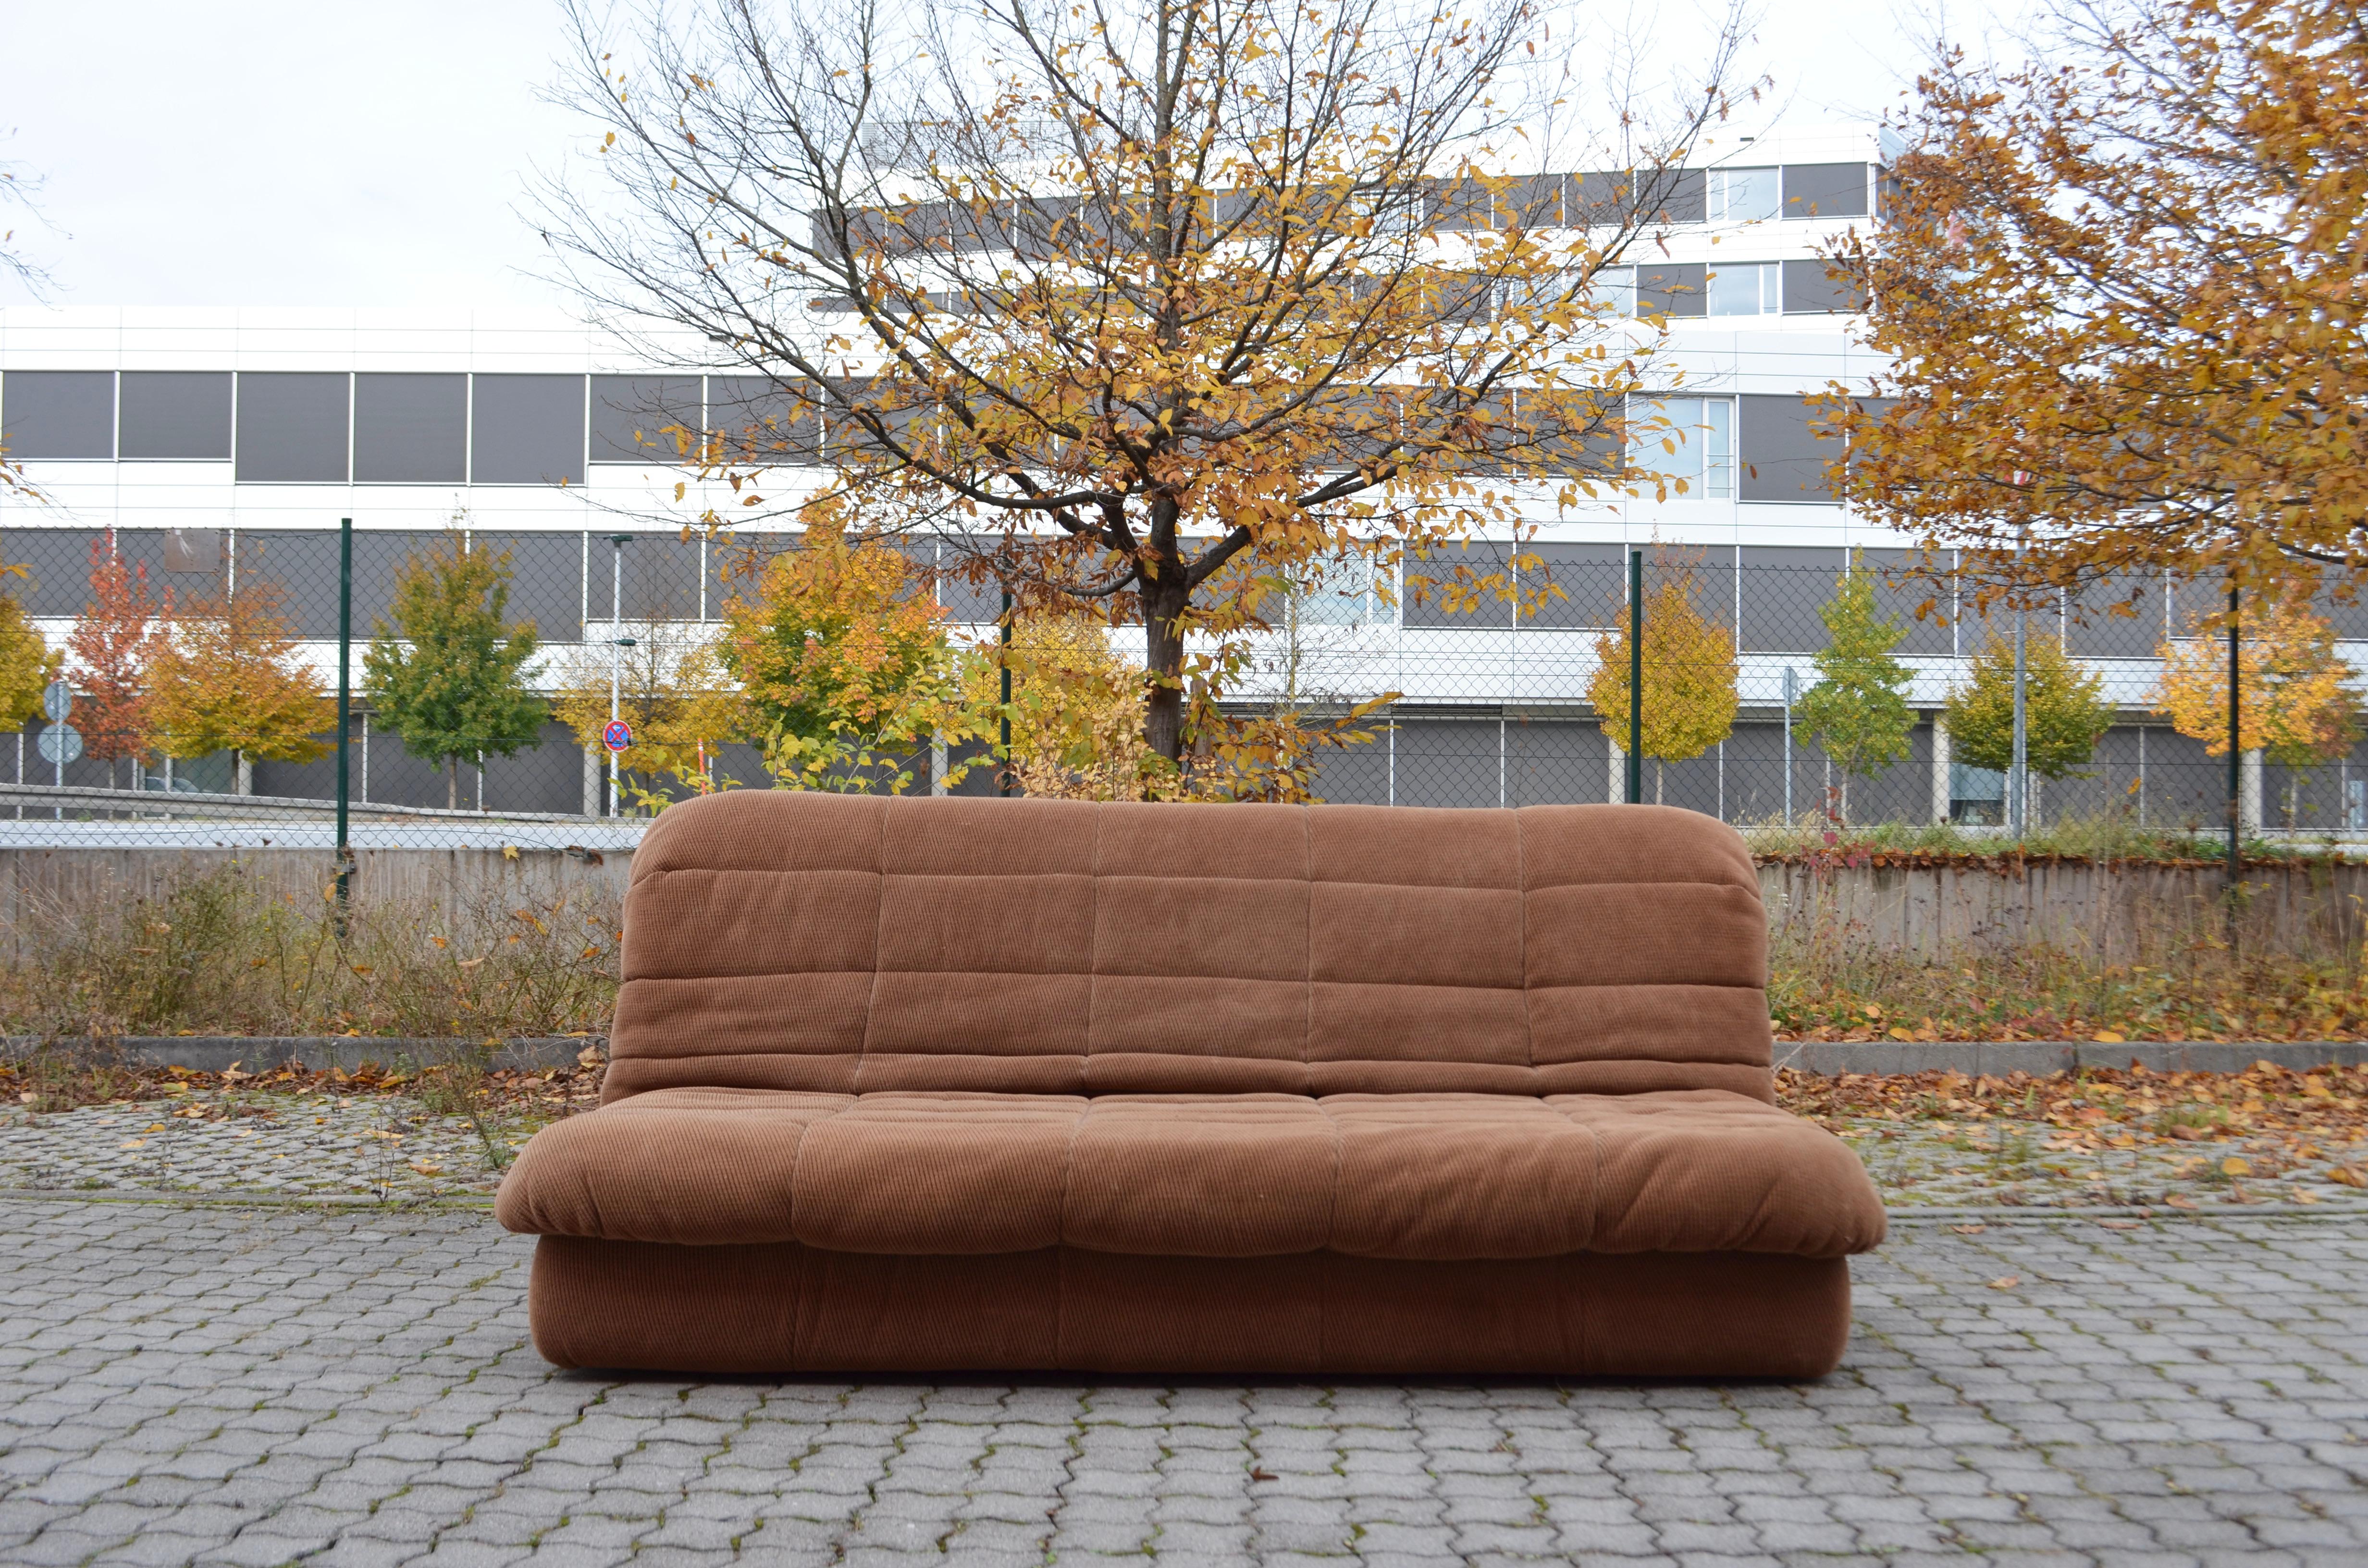 Canapé-lit Cinna / Ligne Roset Modèle GAO conçu par Jean Paul Laloy.
Rare Daybed Sofa en très bon état.
La couleur du tissu est marron et a une structure en velours.
Il est doux et confortable.
Le canapé peut être transformé facilement grâce à